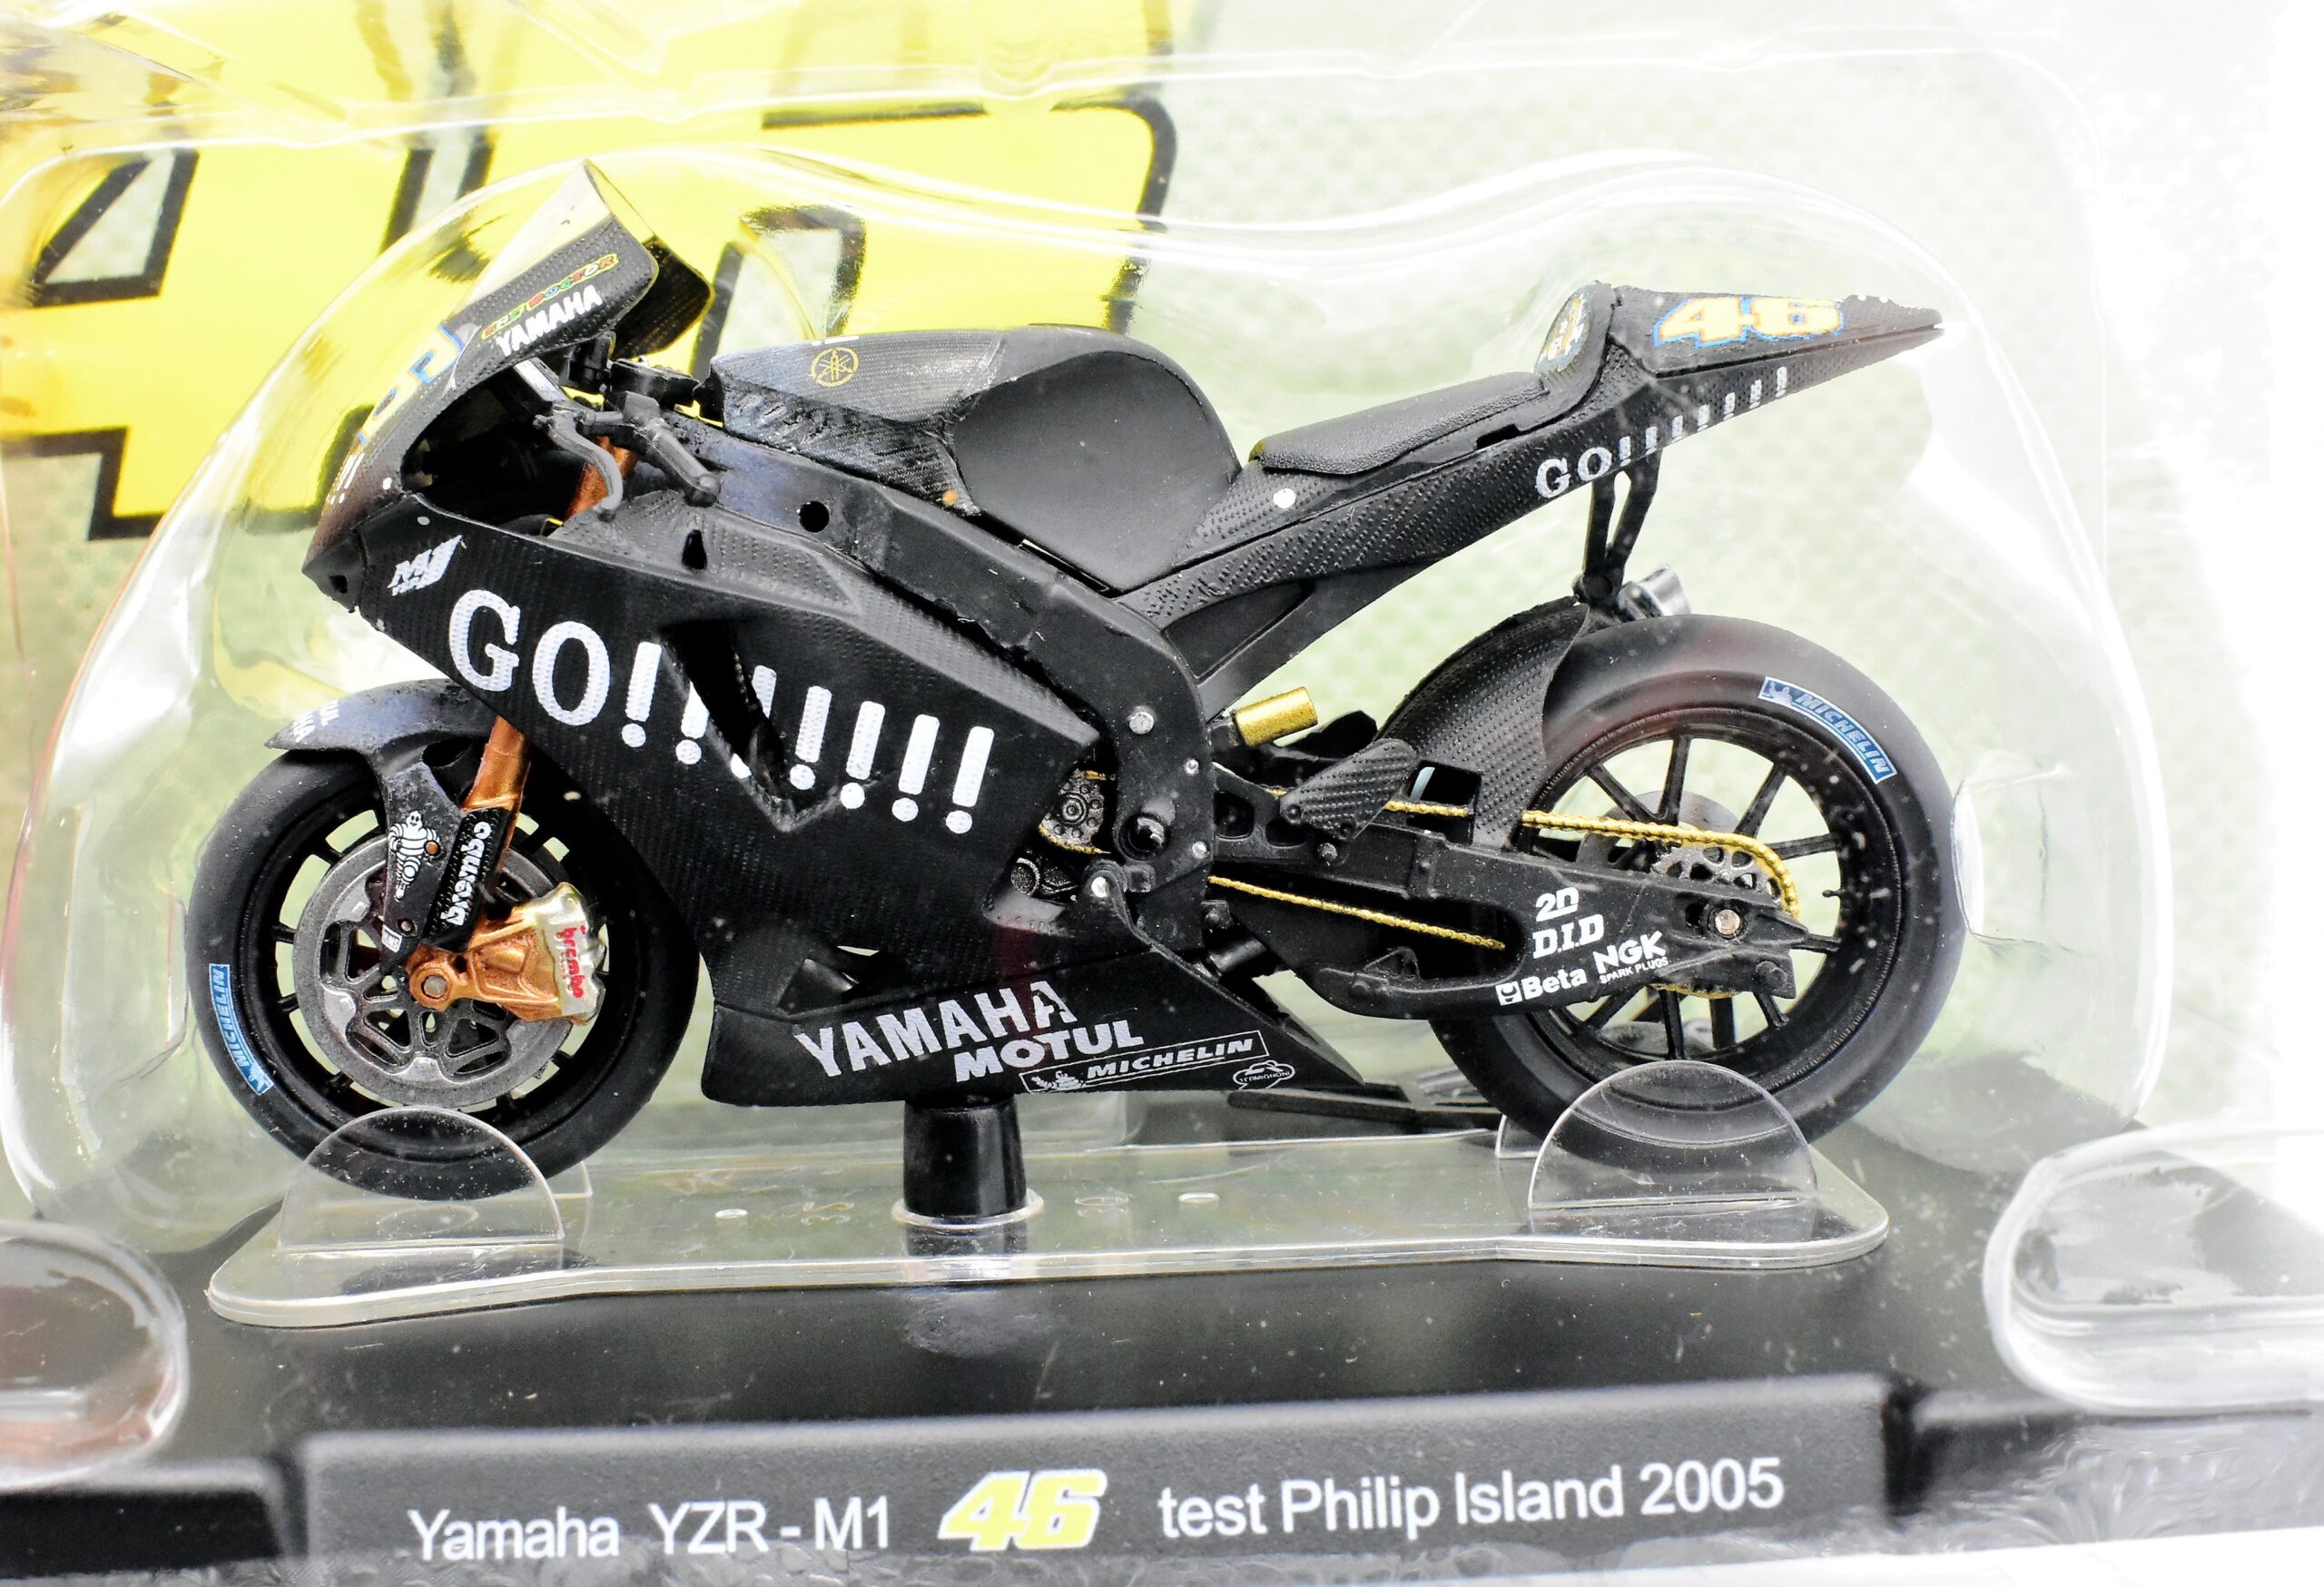 Modellini moto Valentino Rossi scala 1:18 YAMAHA YZR-M1 gp motor bike collezione